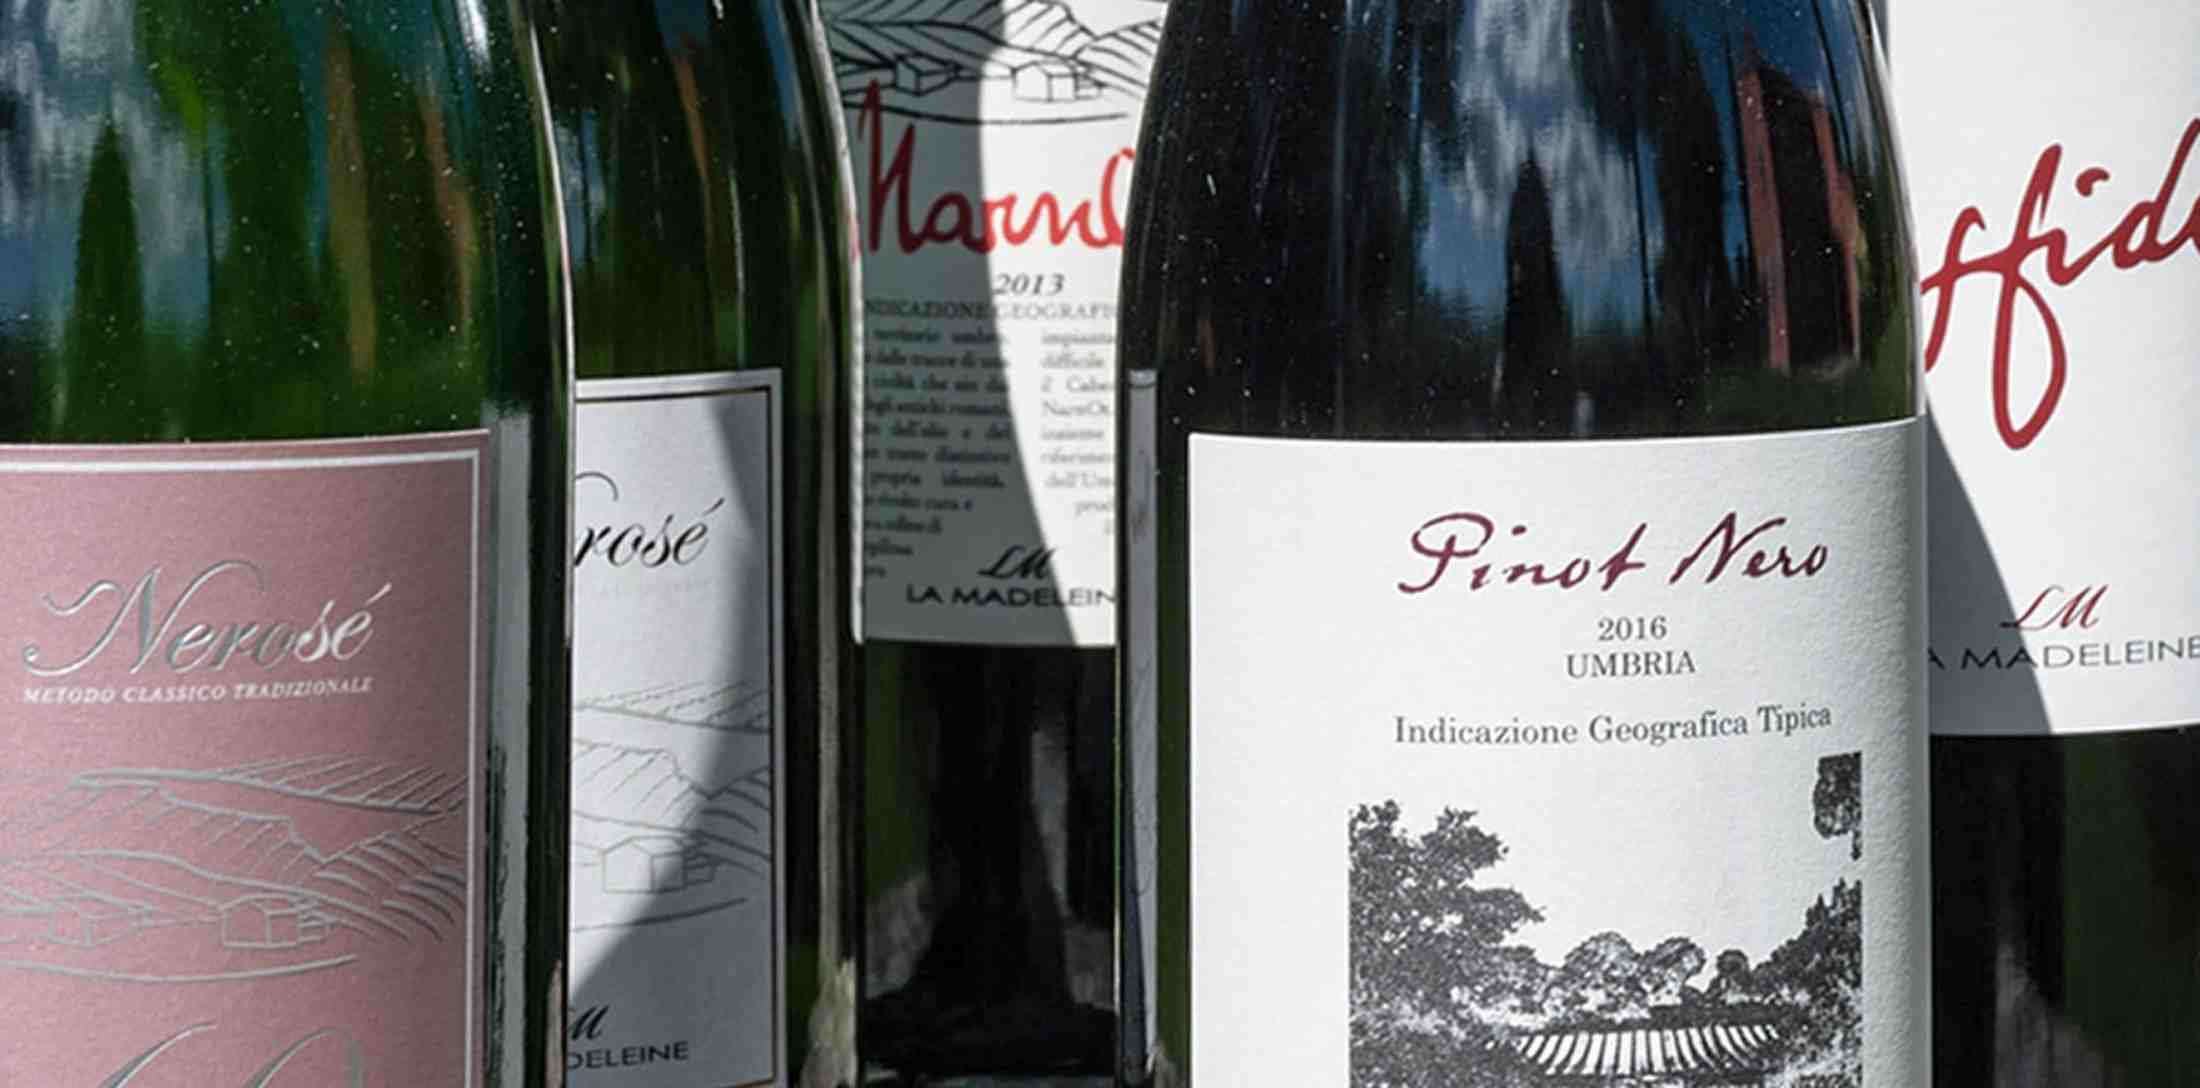 Le etichette azienda vitivinicola La Madeleine tra Narni e Otricoli